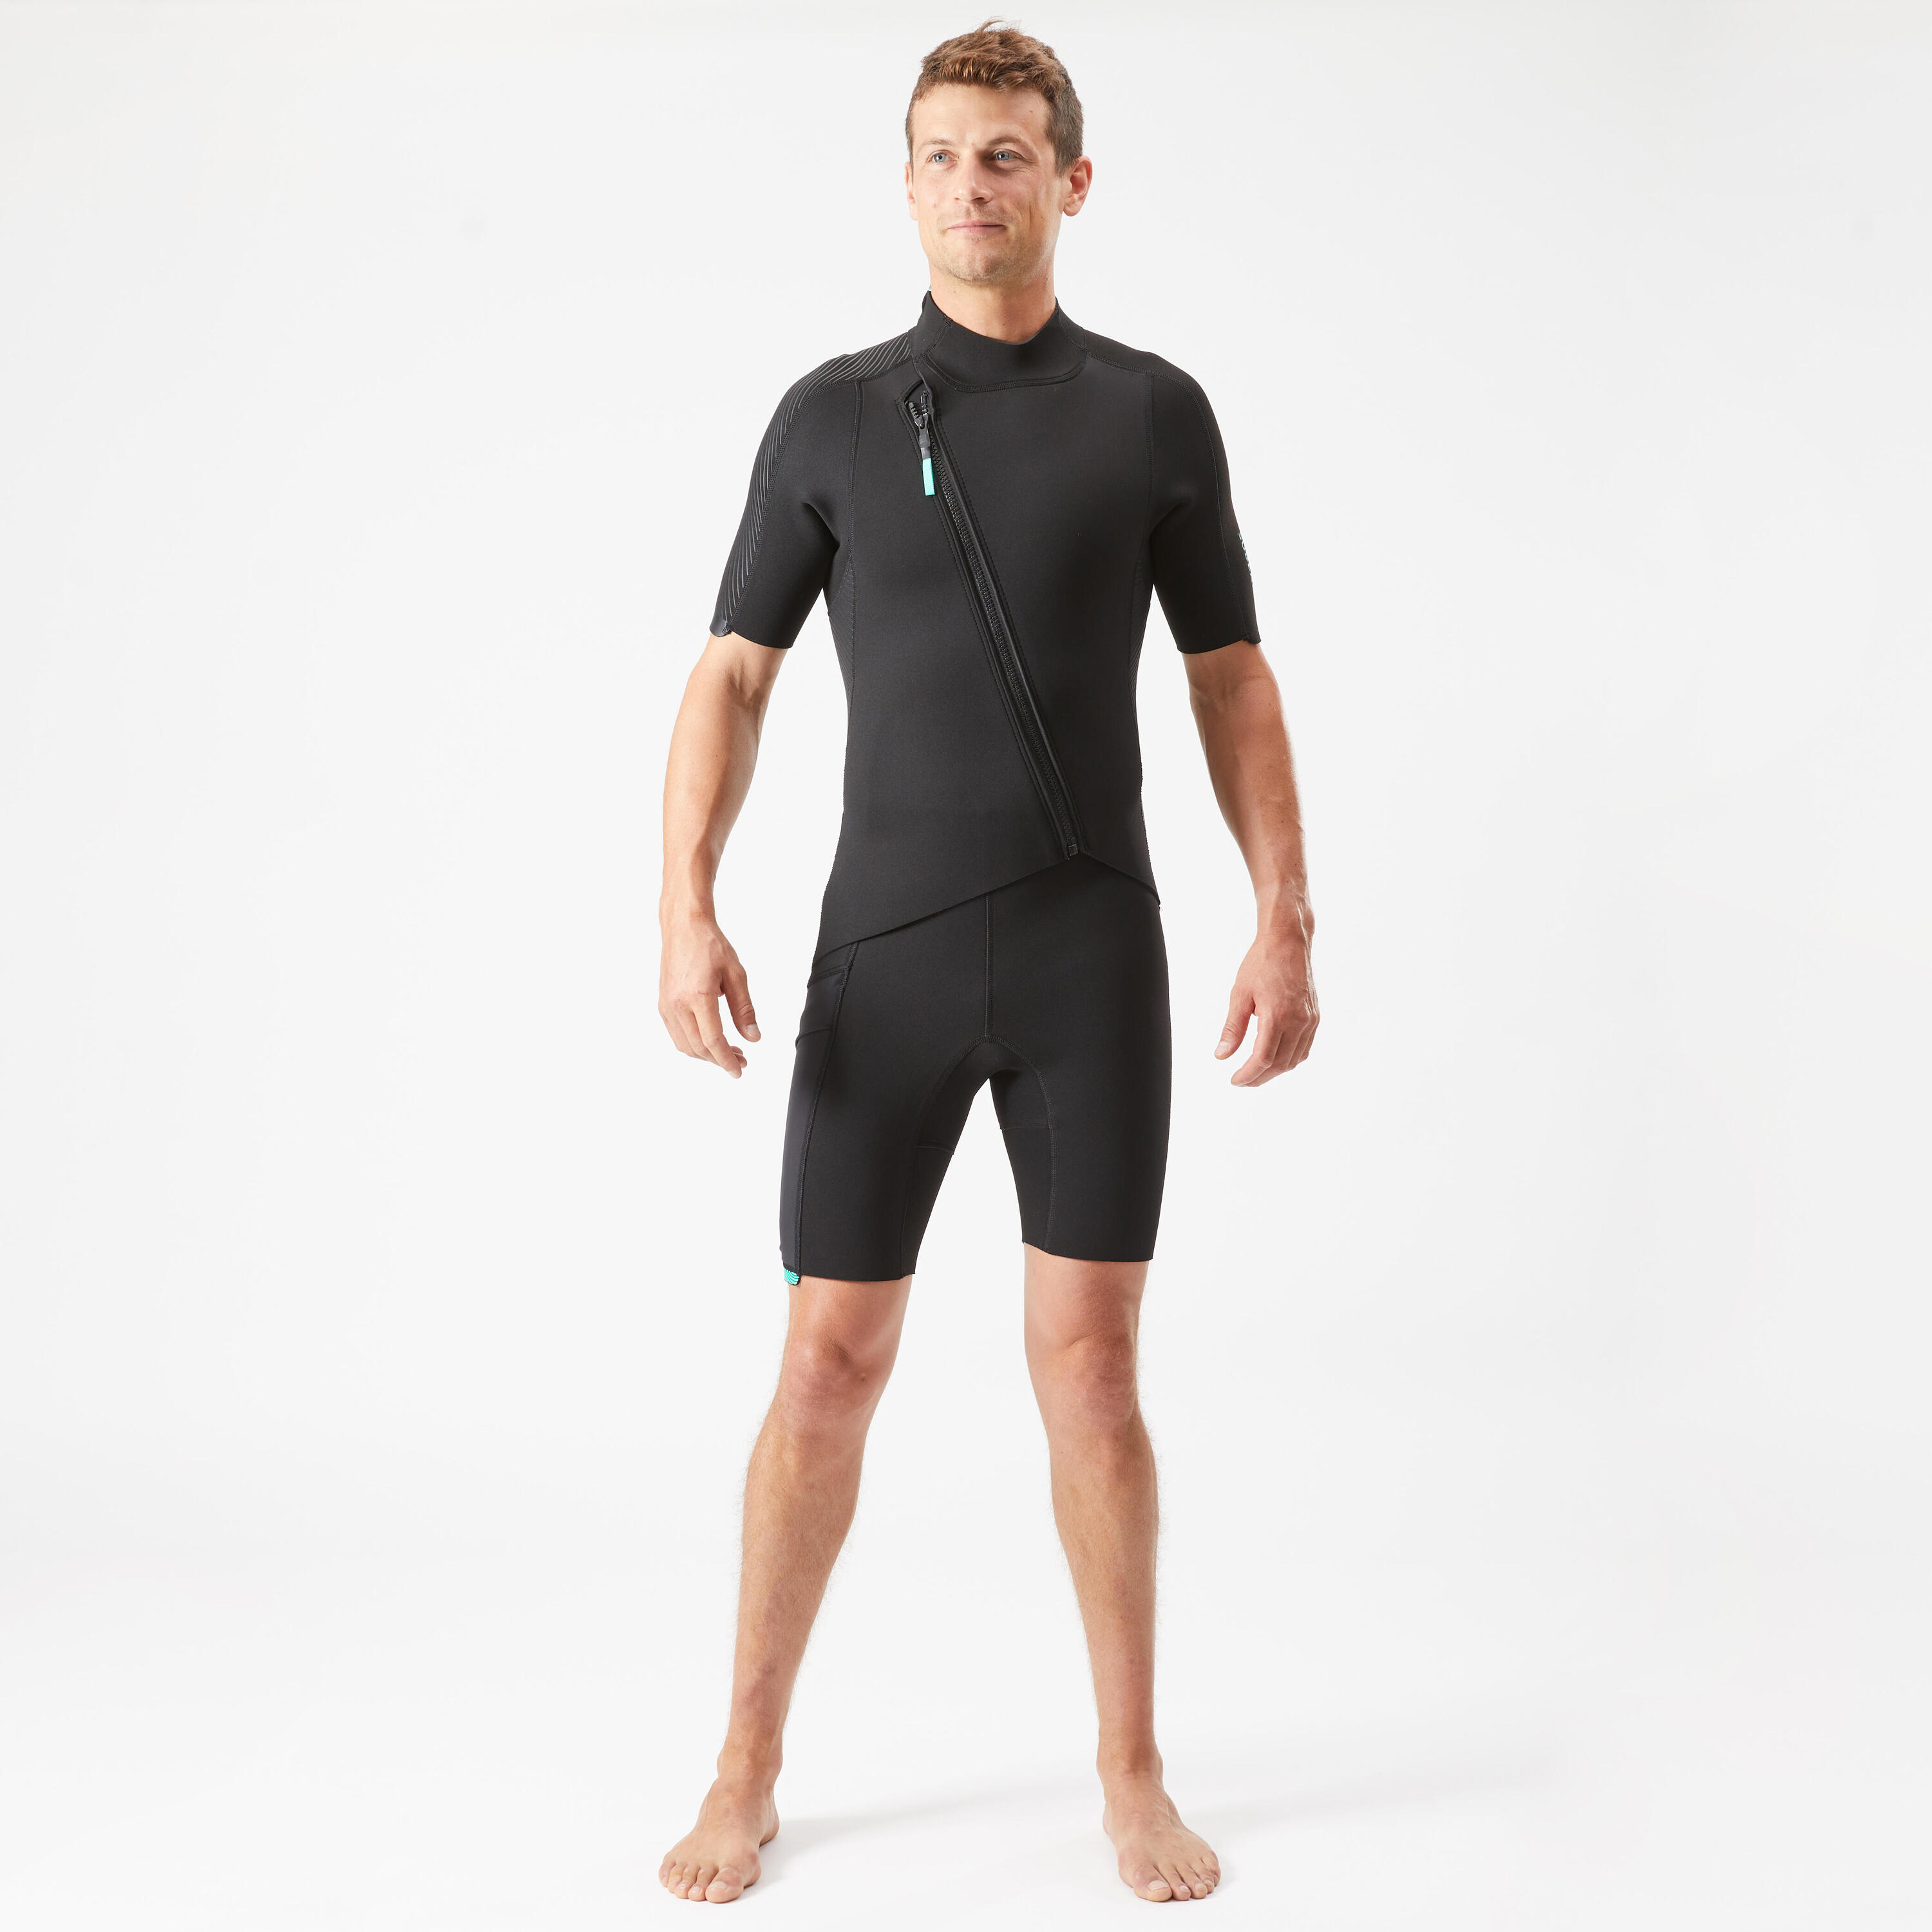 SUBEA Men's 2 mm neoprene shorty wetsuit with diagonal front zip Easy